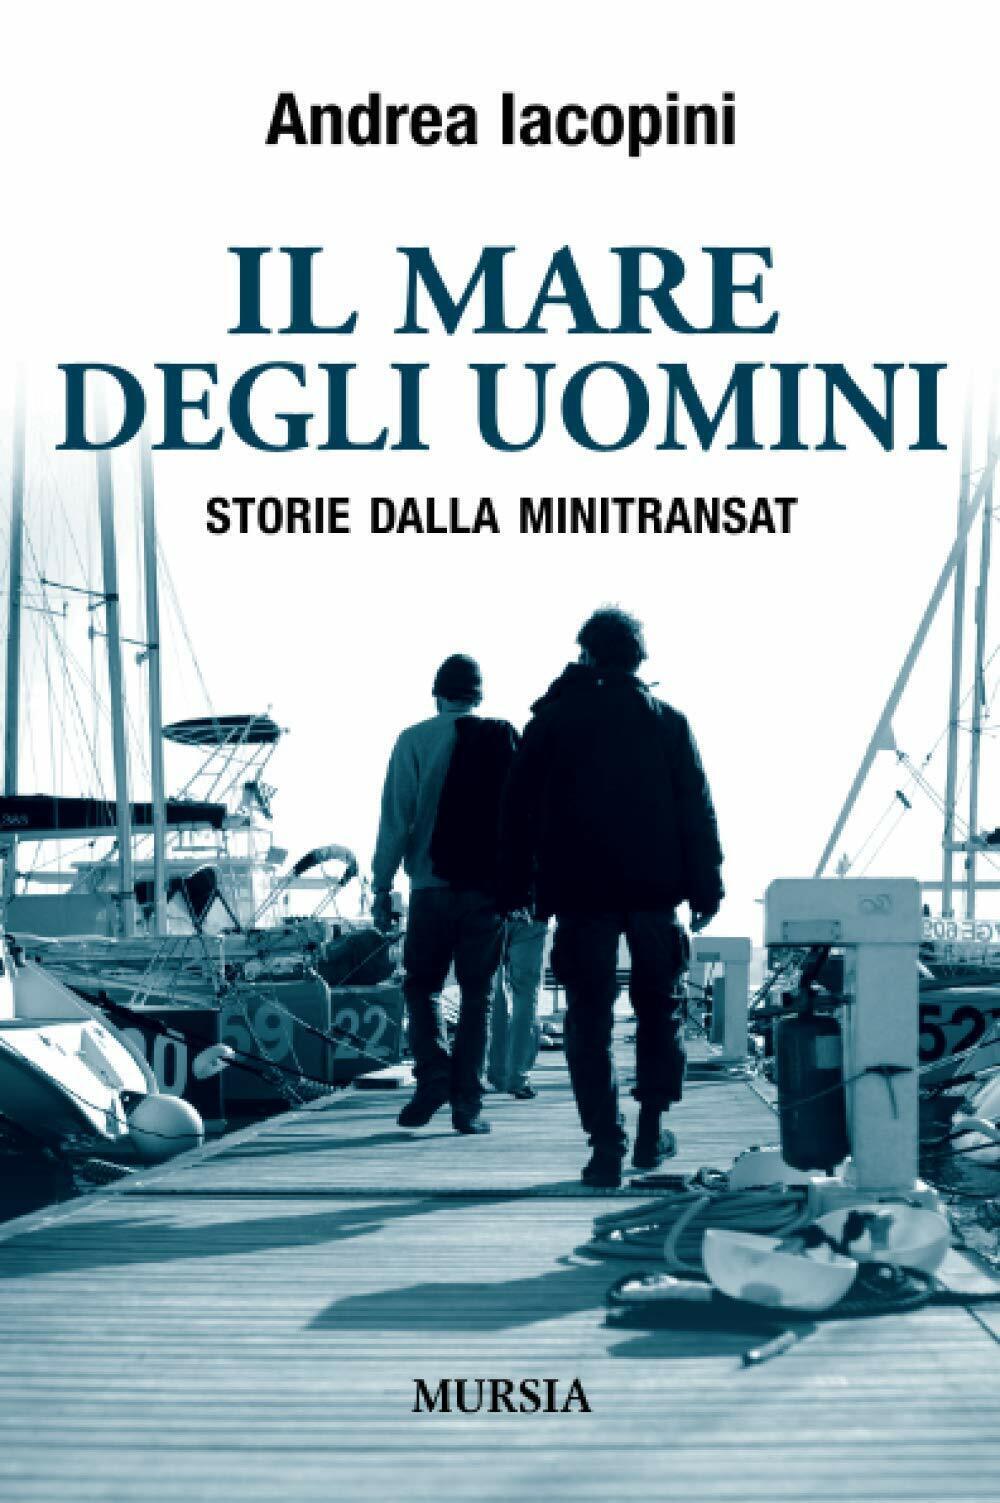 Il mare degli uomini: Storie dalla Minitransat - Andrea Iacopini - Mursia, 2015